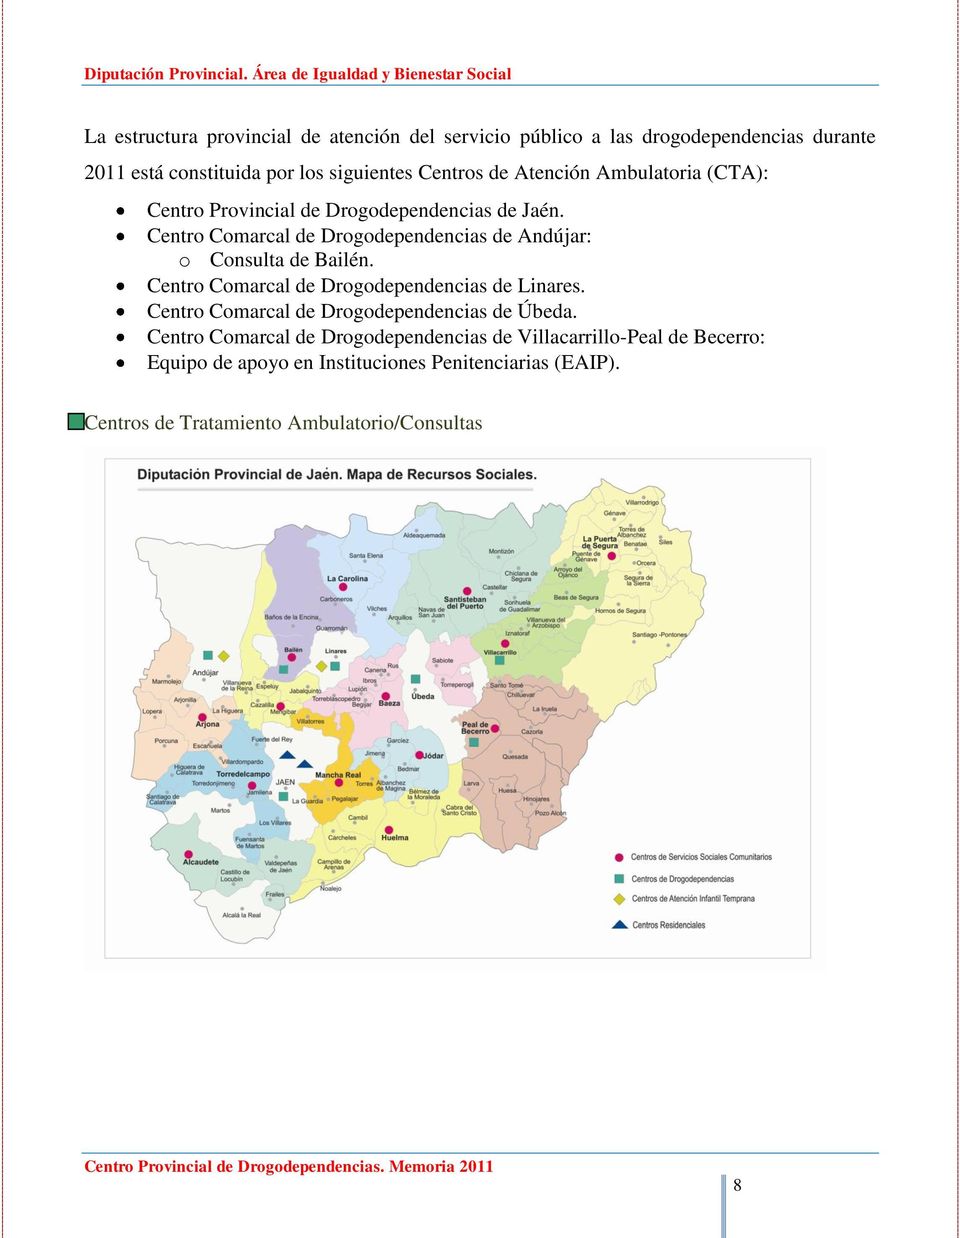 Centro Comarcal de Drogodependencias de Andújar: o Consulta de Bailén. Centro Comarcal de Drogodependencias de Linares.